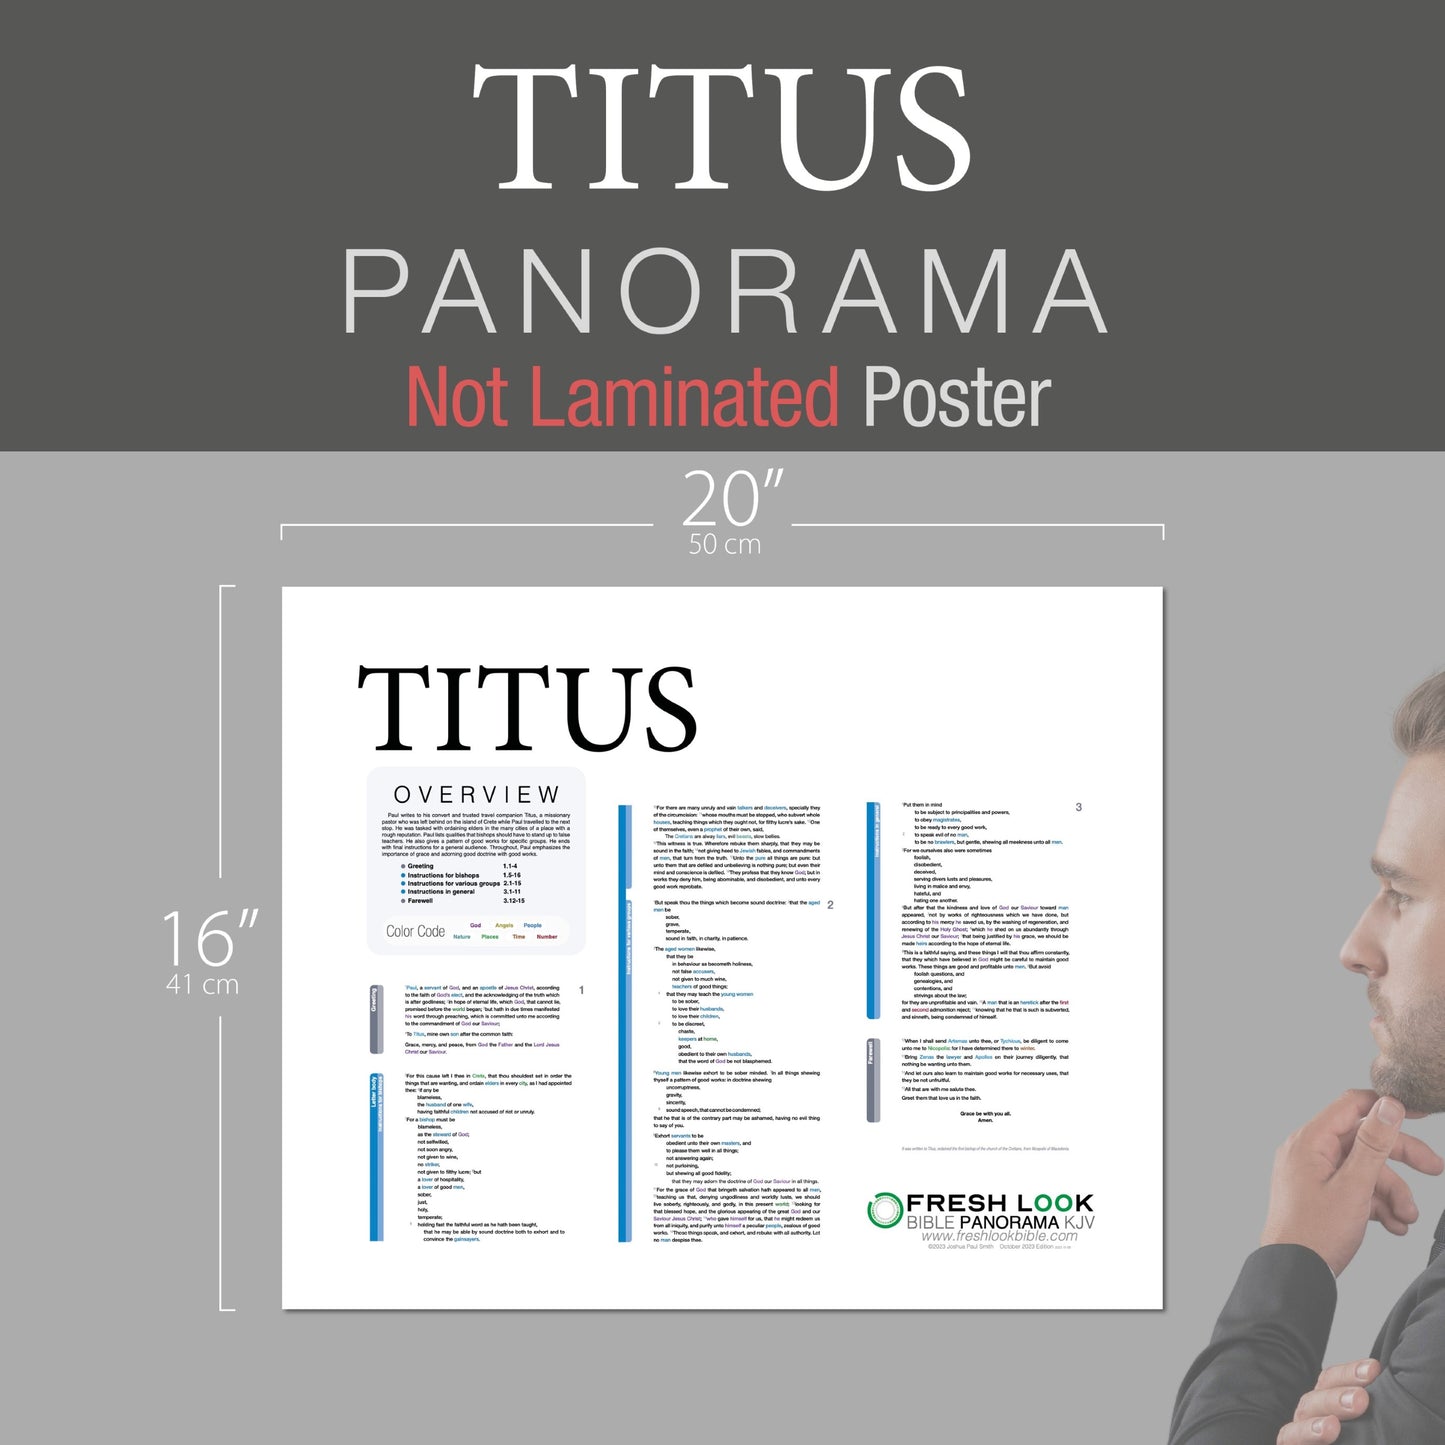 Titus Panorama Not Laminated